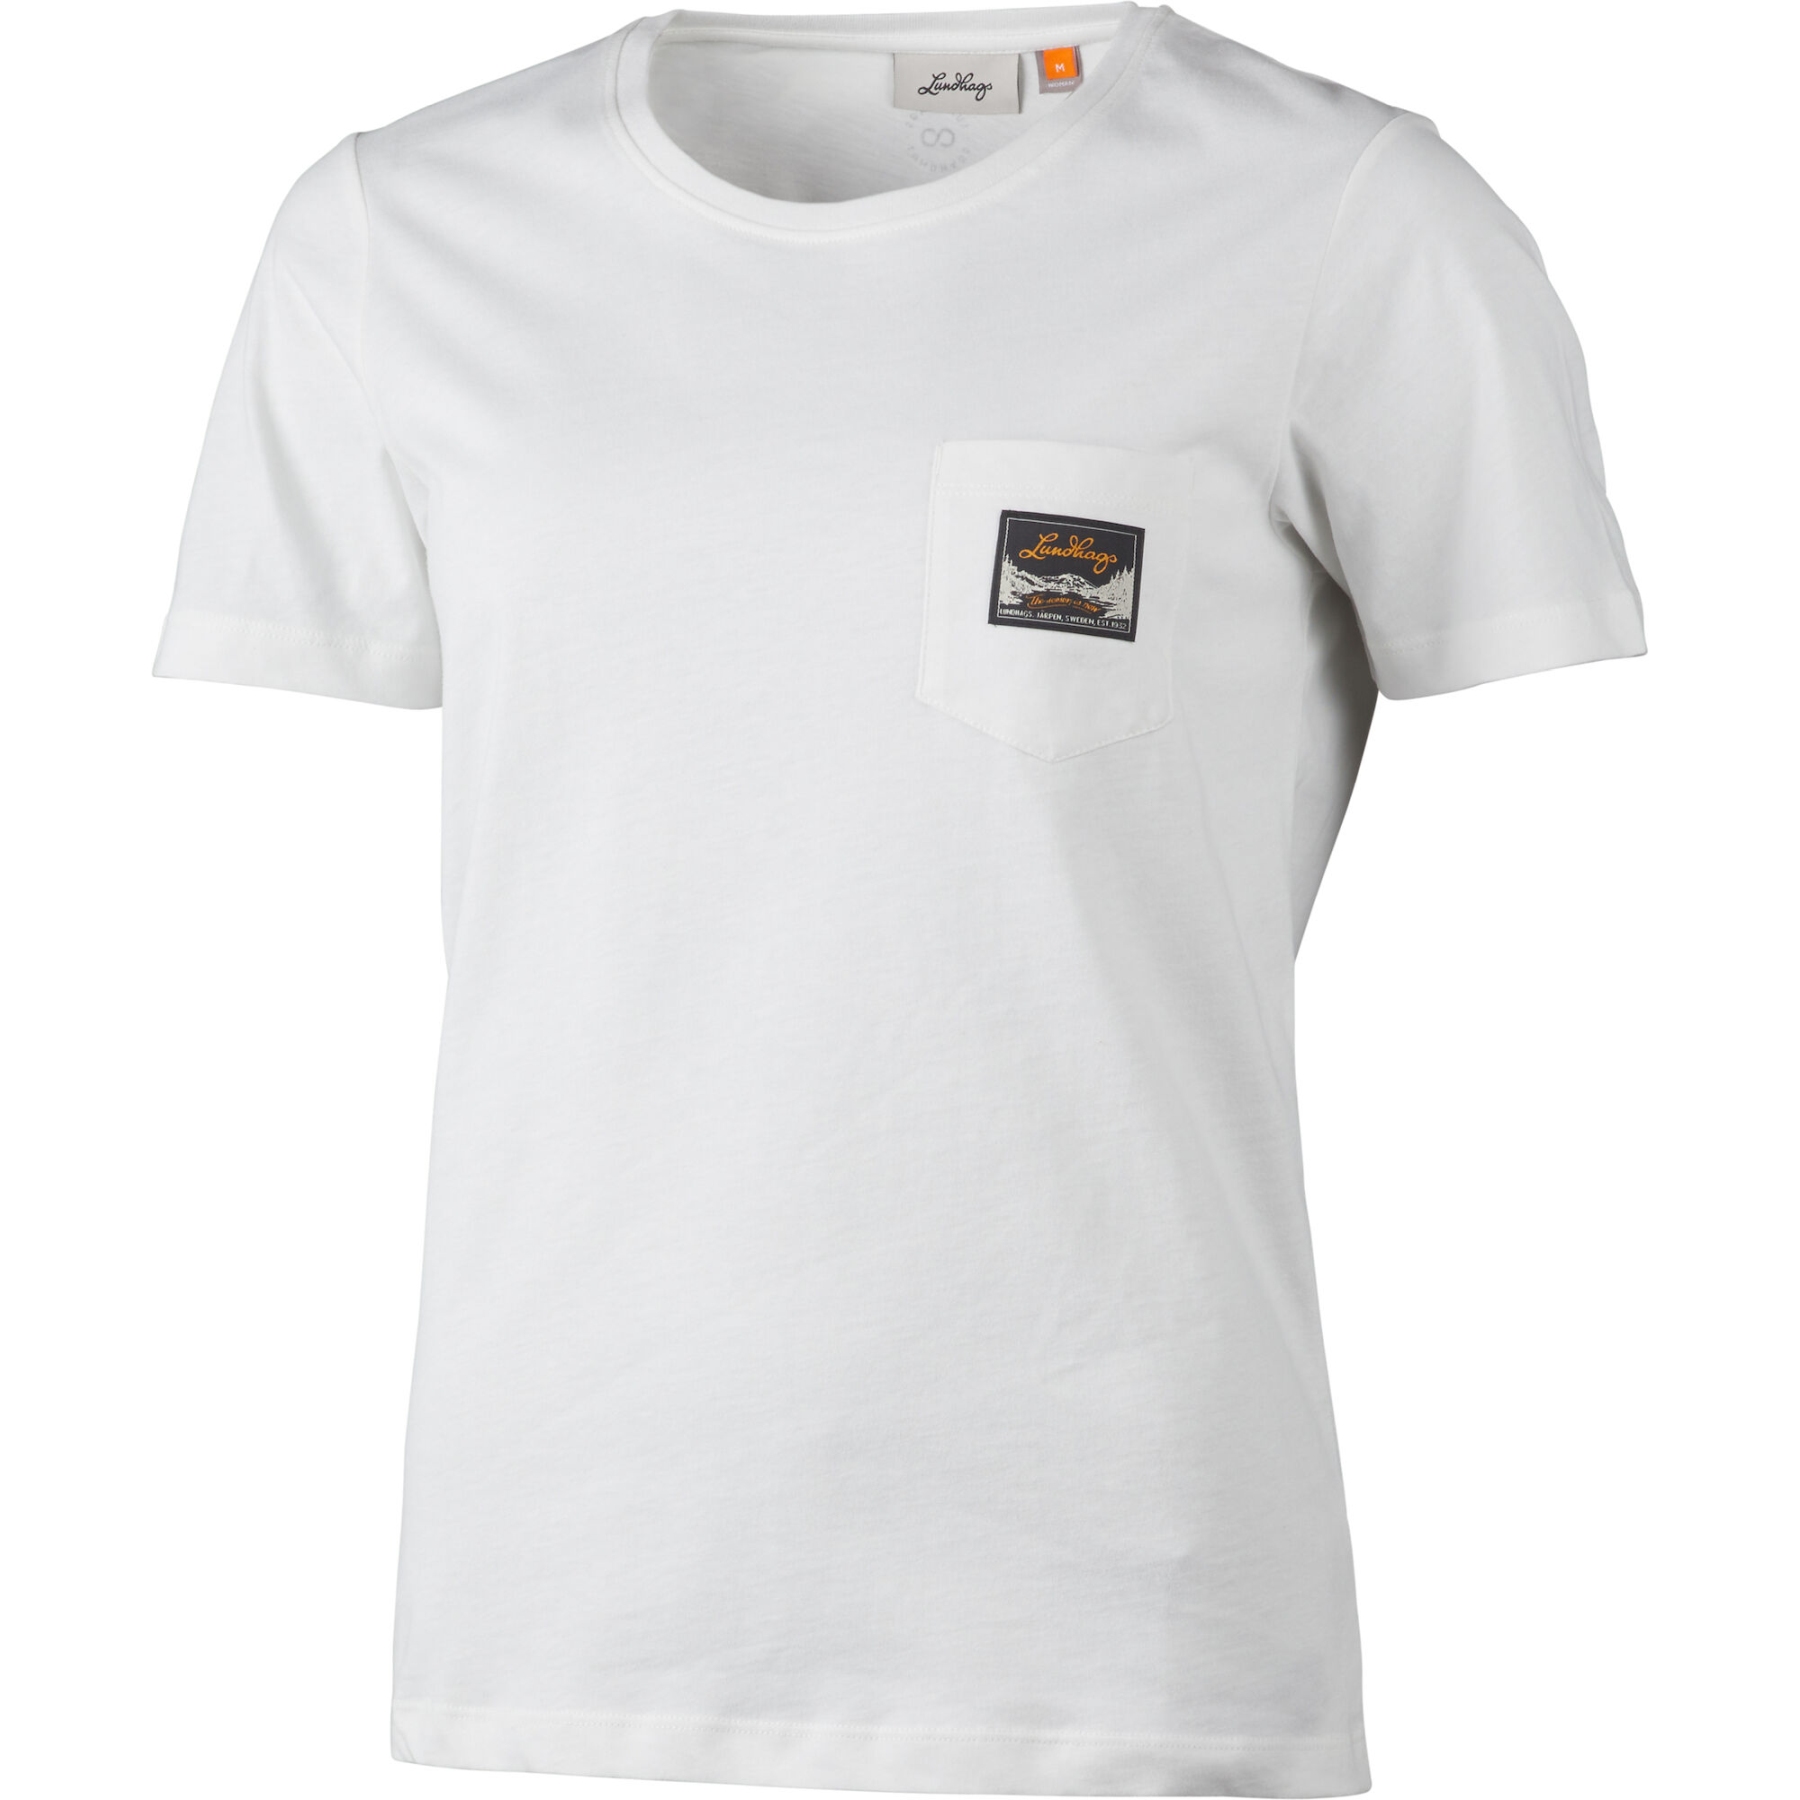 Produktbild von Lundhags Knak T-Shirt Damen - Weiß 100